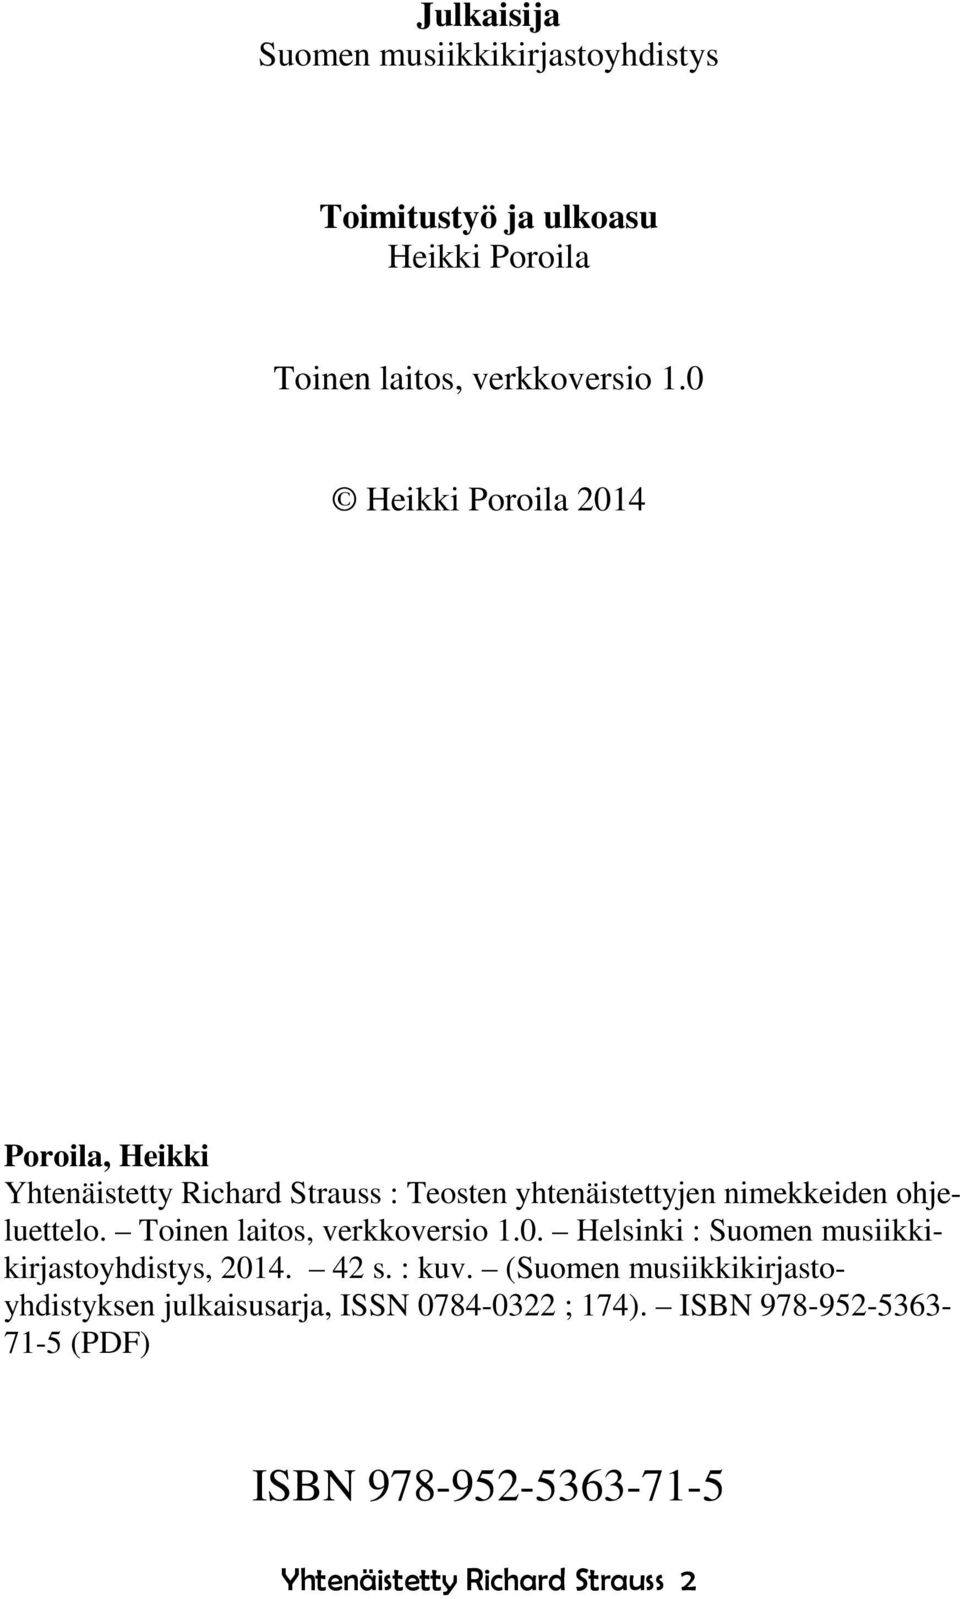 Toinen laitos, verkkoversio 1.0. Helsinki : Suomen musiikkikirjastoyhdistys, 2014. 42 s. : kuv.